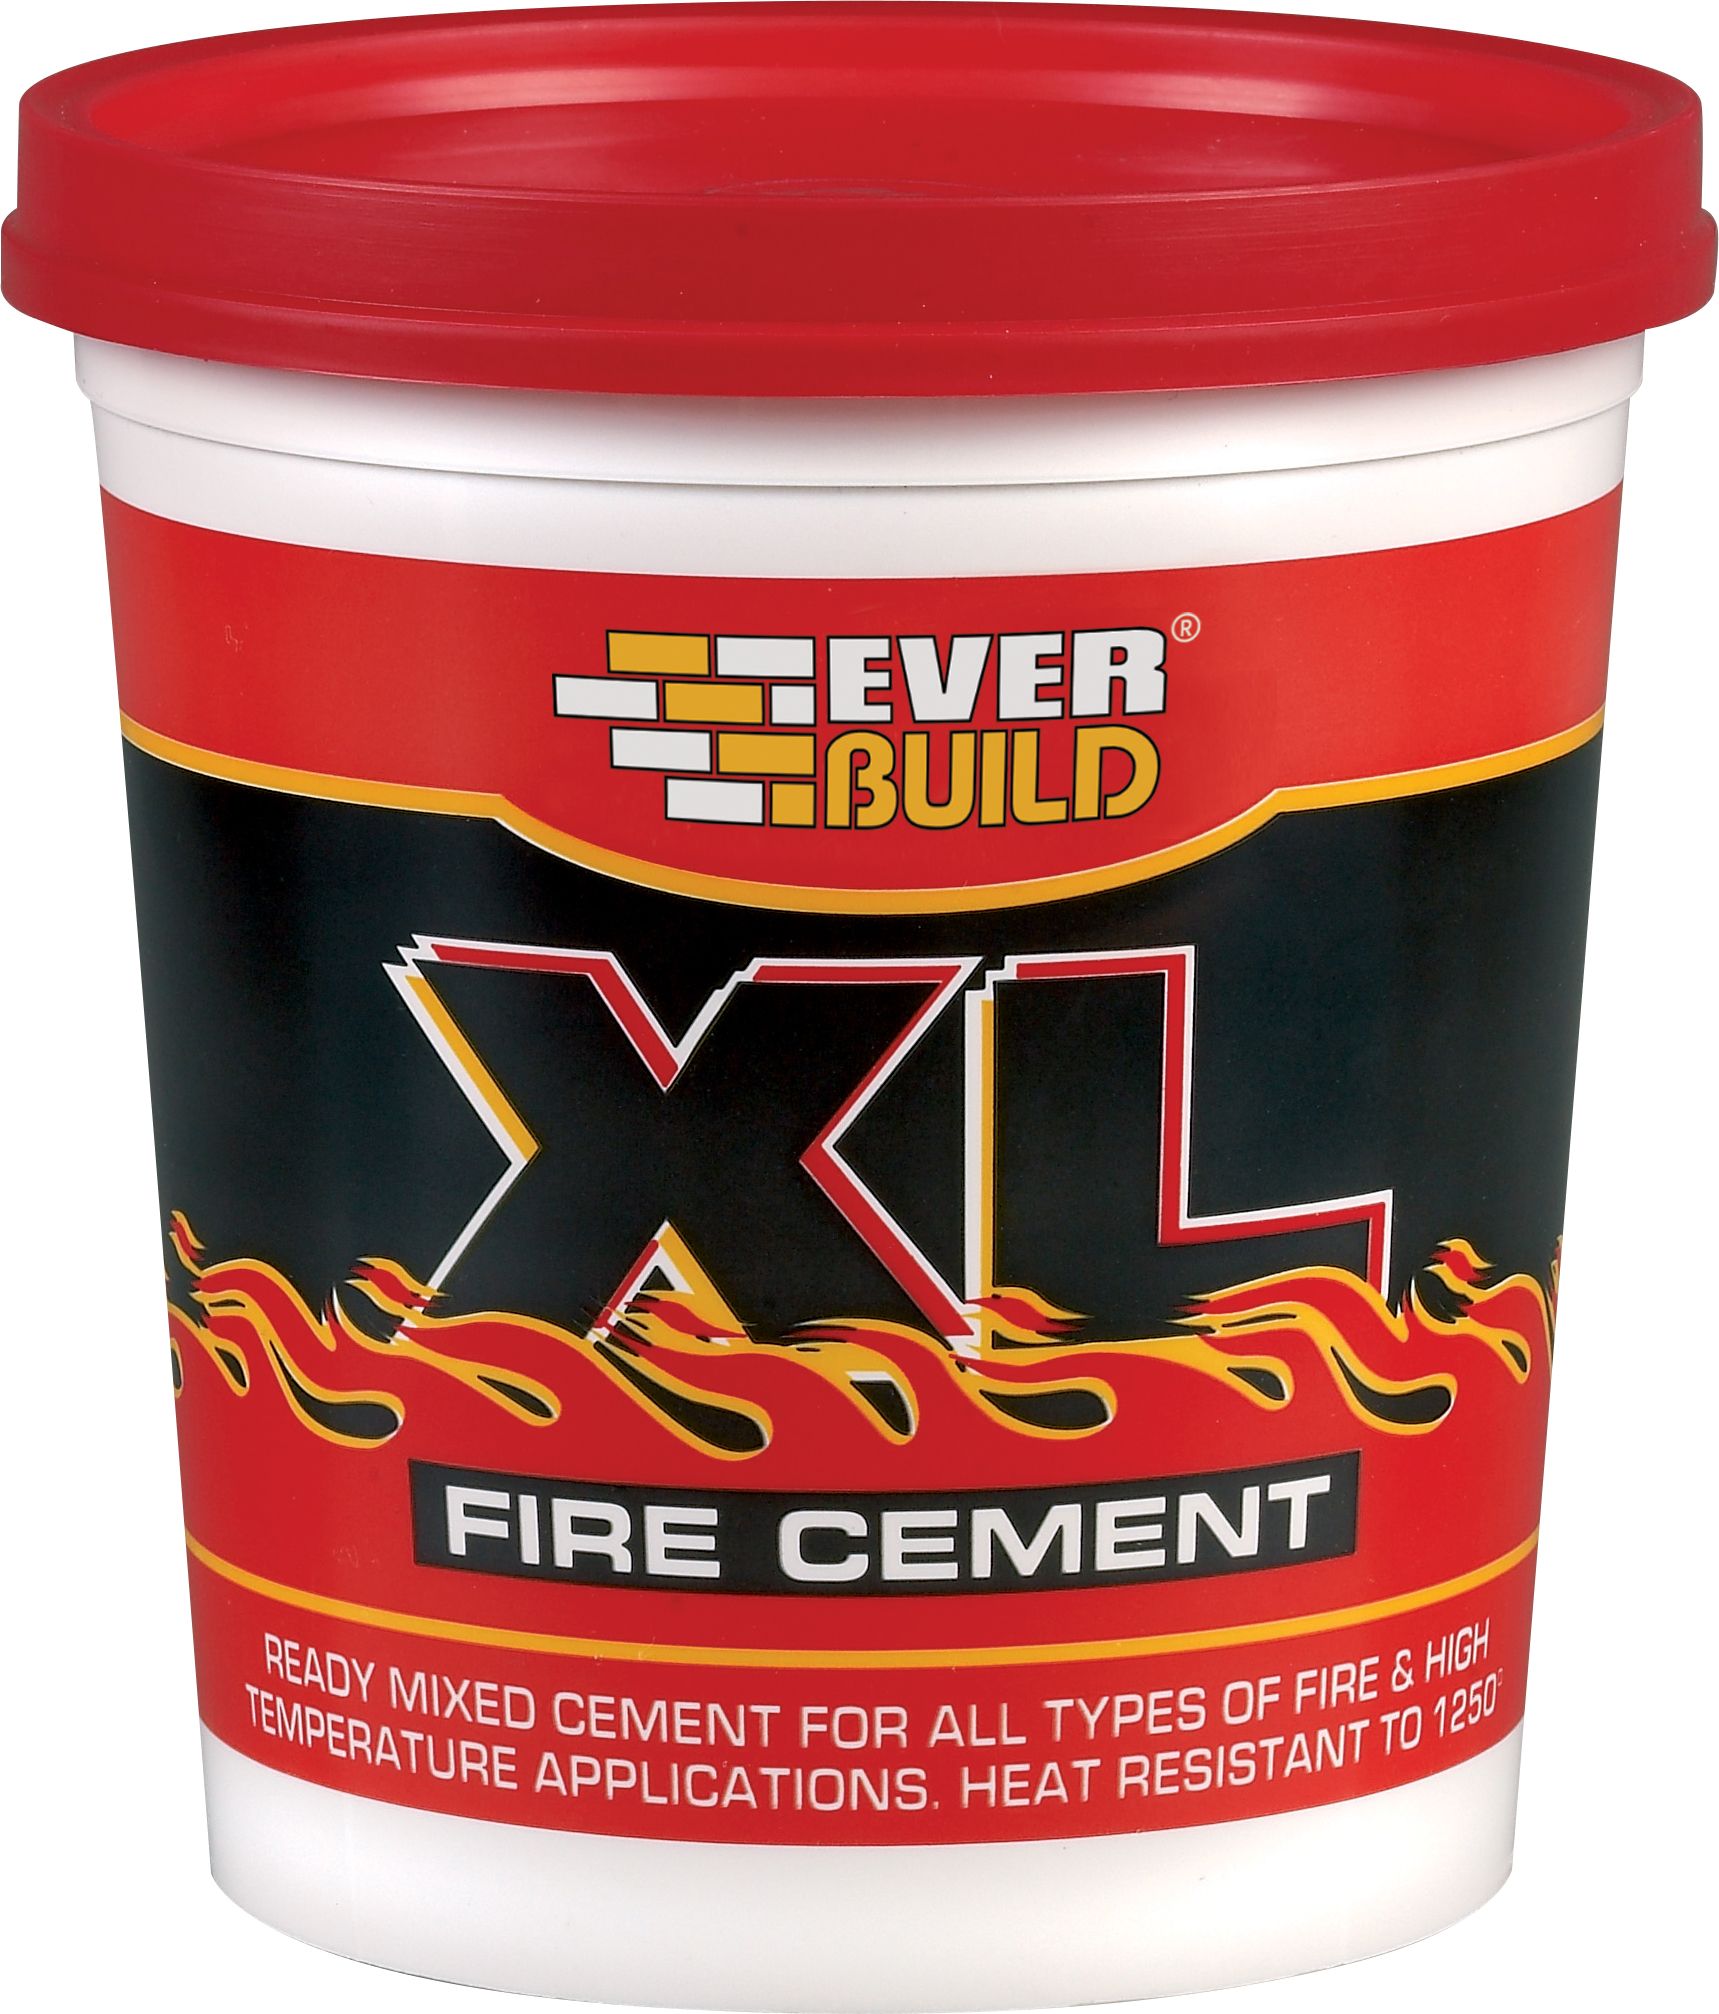 Everbuild XL Fire cement, 2kg Tub